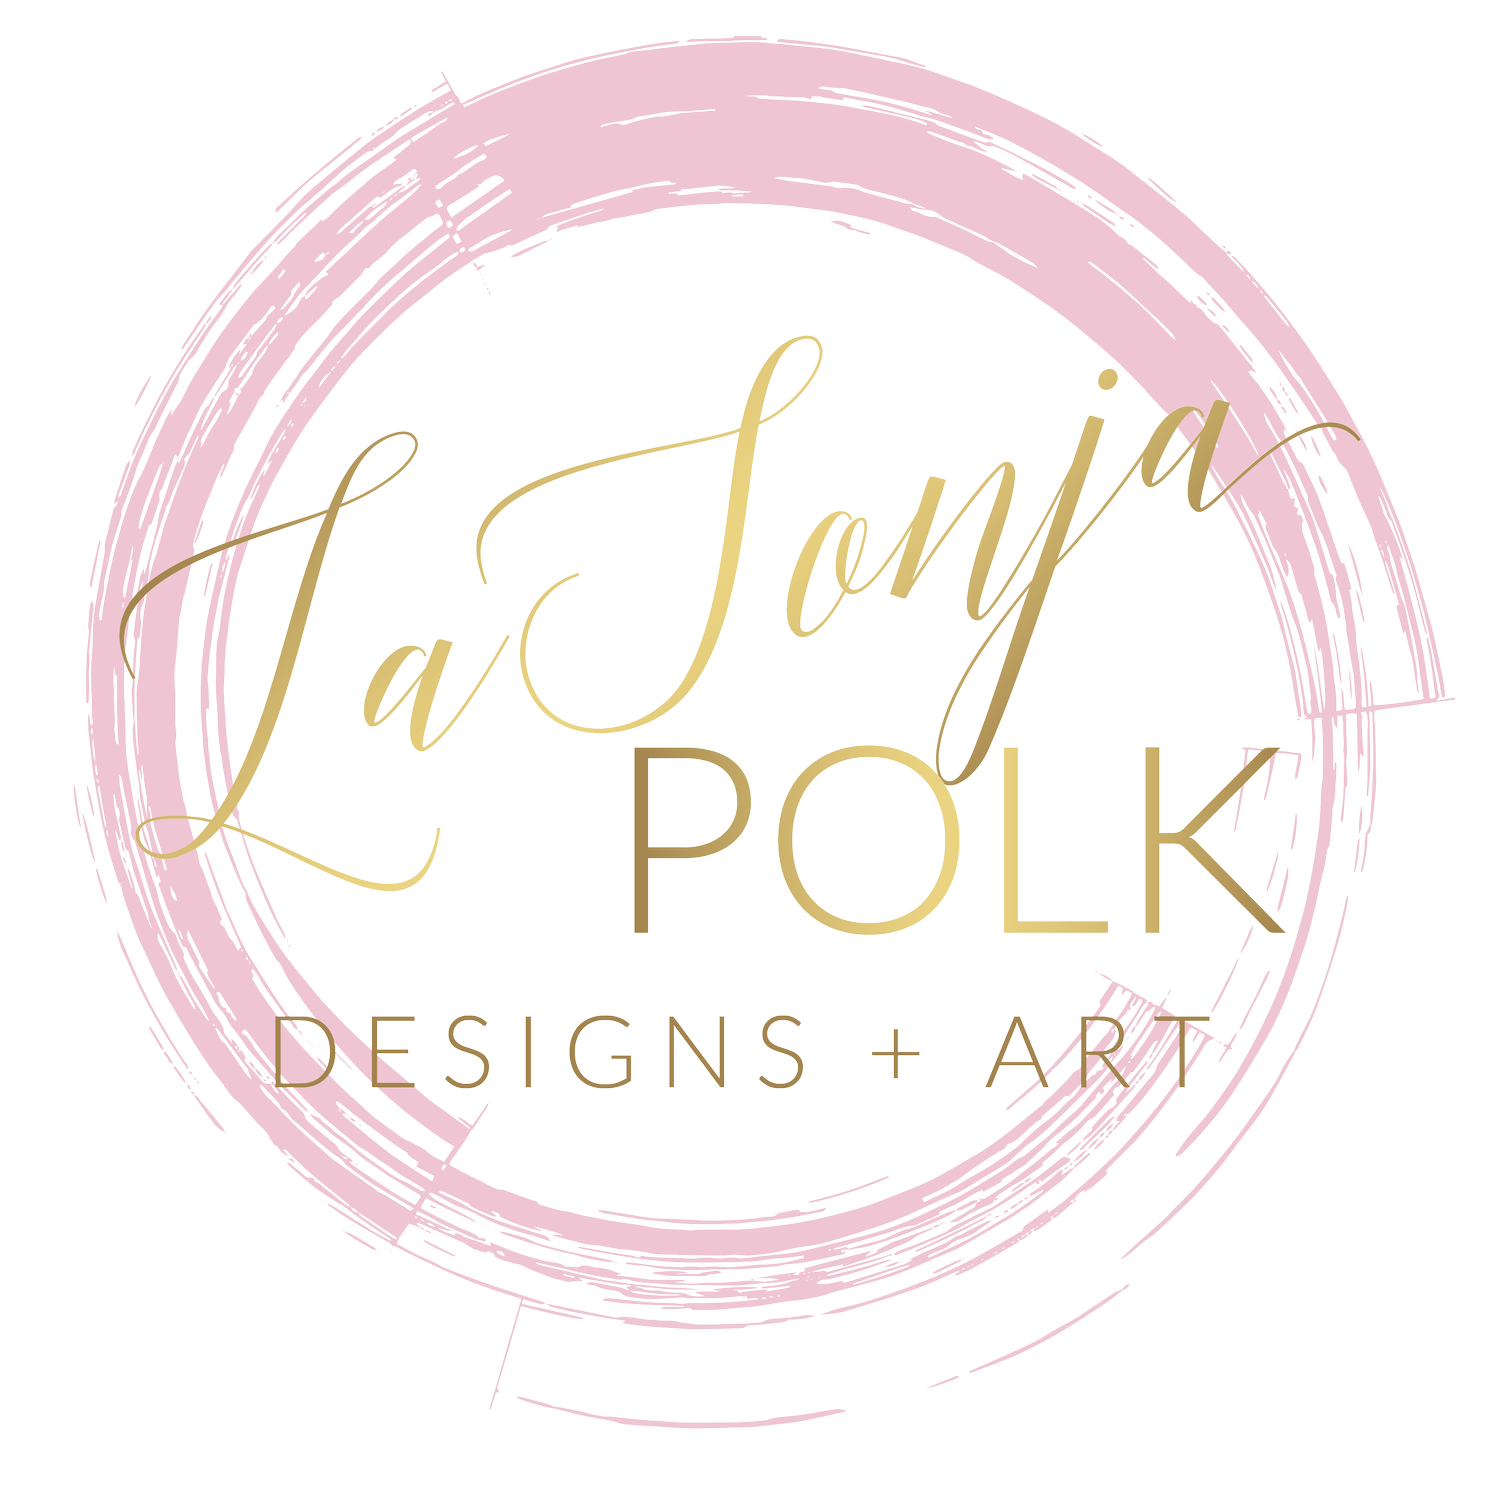 LaSonja Polk Designs LLC